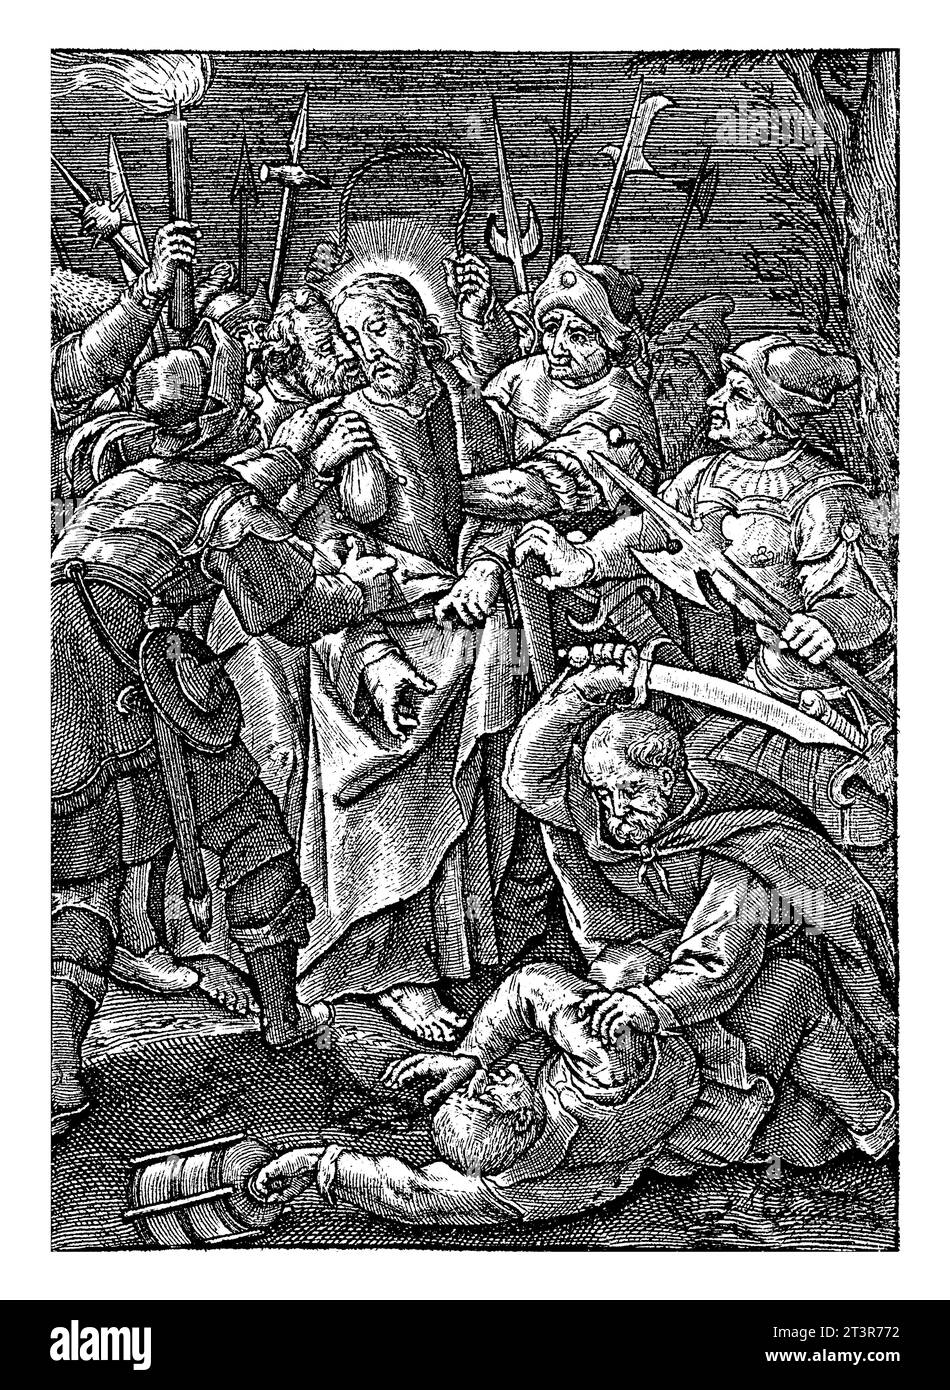 Judas Kuss und Verhaftung Christi, Hieronymus Wierix, 1563 - vor 1619 küsst Judas Christus auf die Wange. Die Soldaten umzingeln ihn und verhaften ihn. Stockfoto